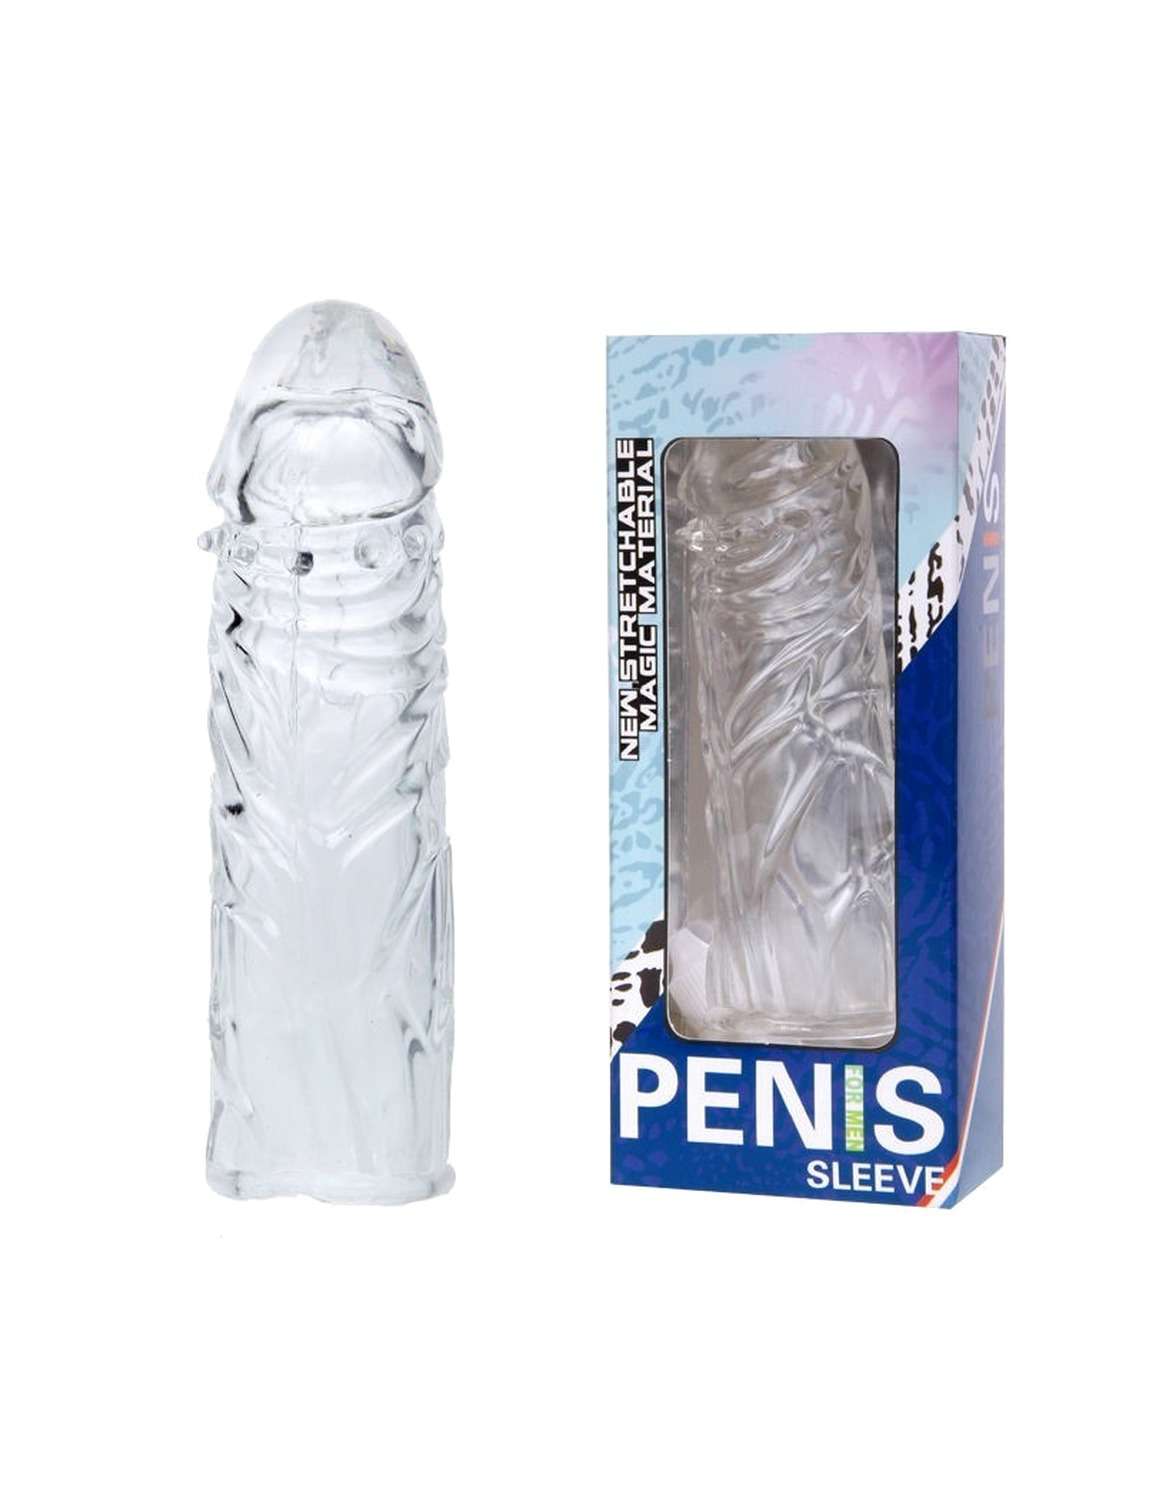 13cm penis